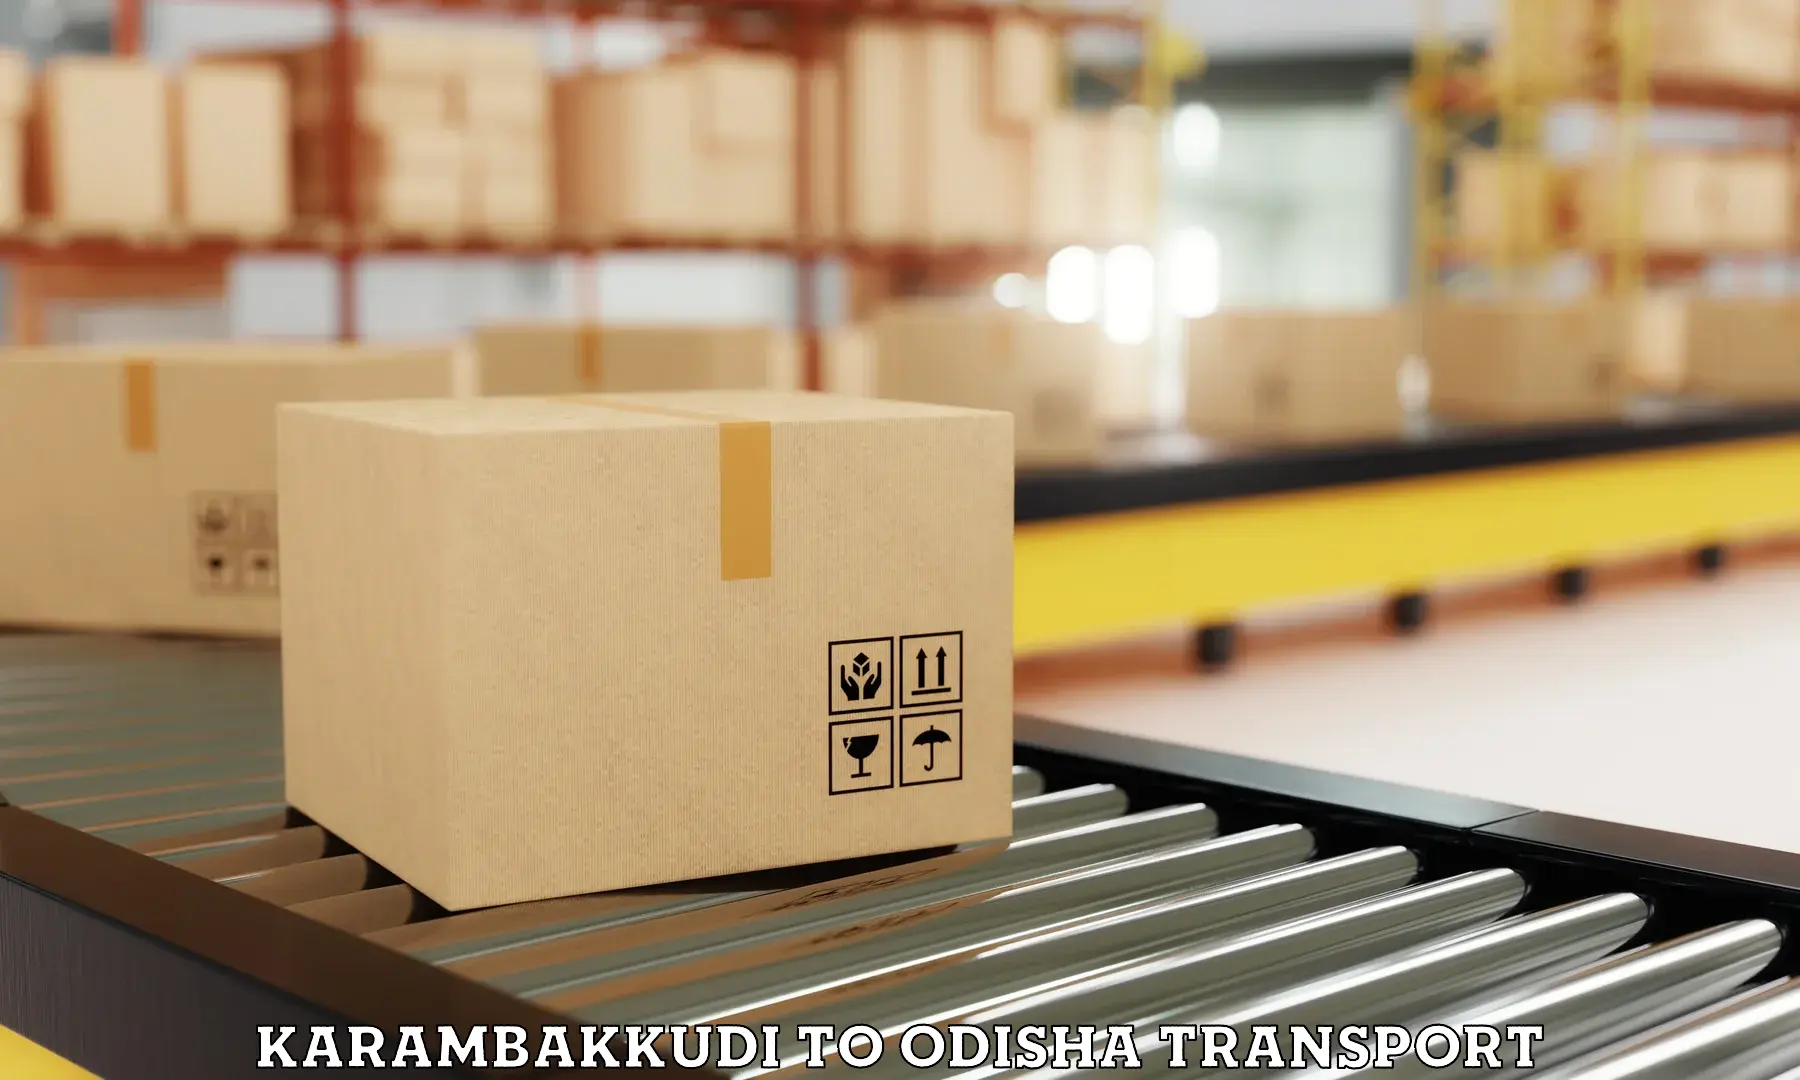 Shipping partner Karambakkudi to Jashipur